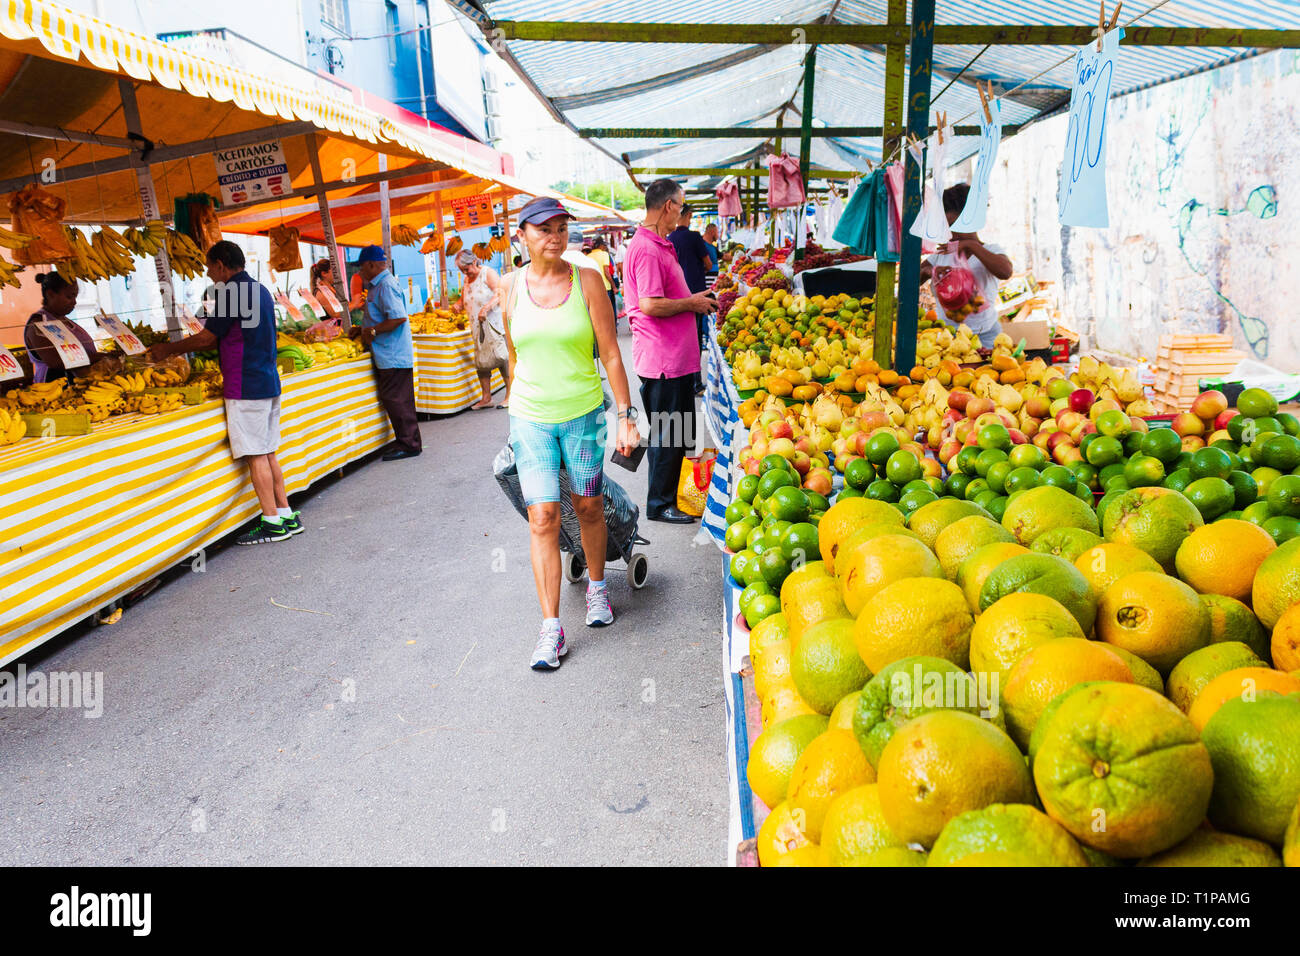 Taboão da Serra, SP / Brasile - 03/17/2019: Un gruppo non identificato di persone in commercio, la vendita di ortaggi e frutta e cibo in fiera. Foto Stock